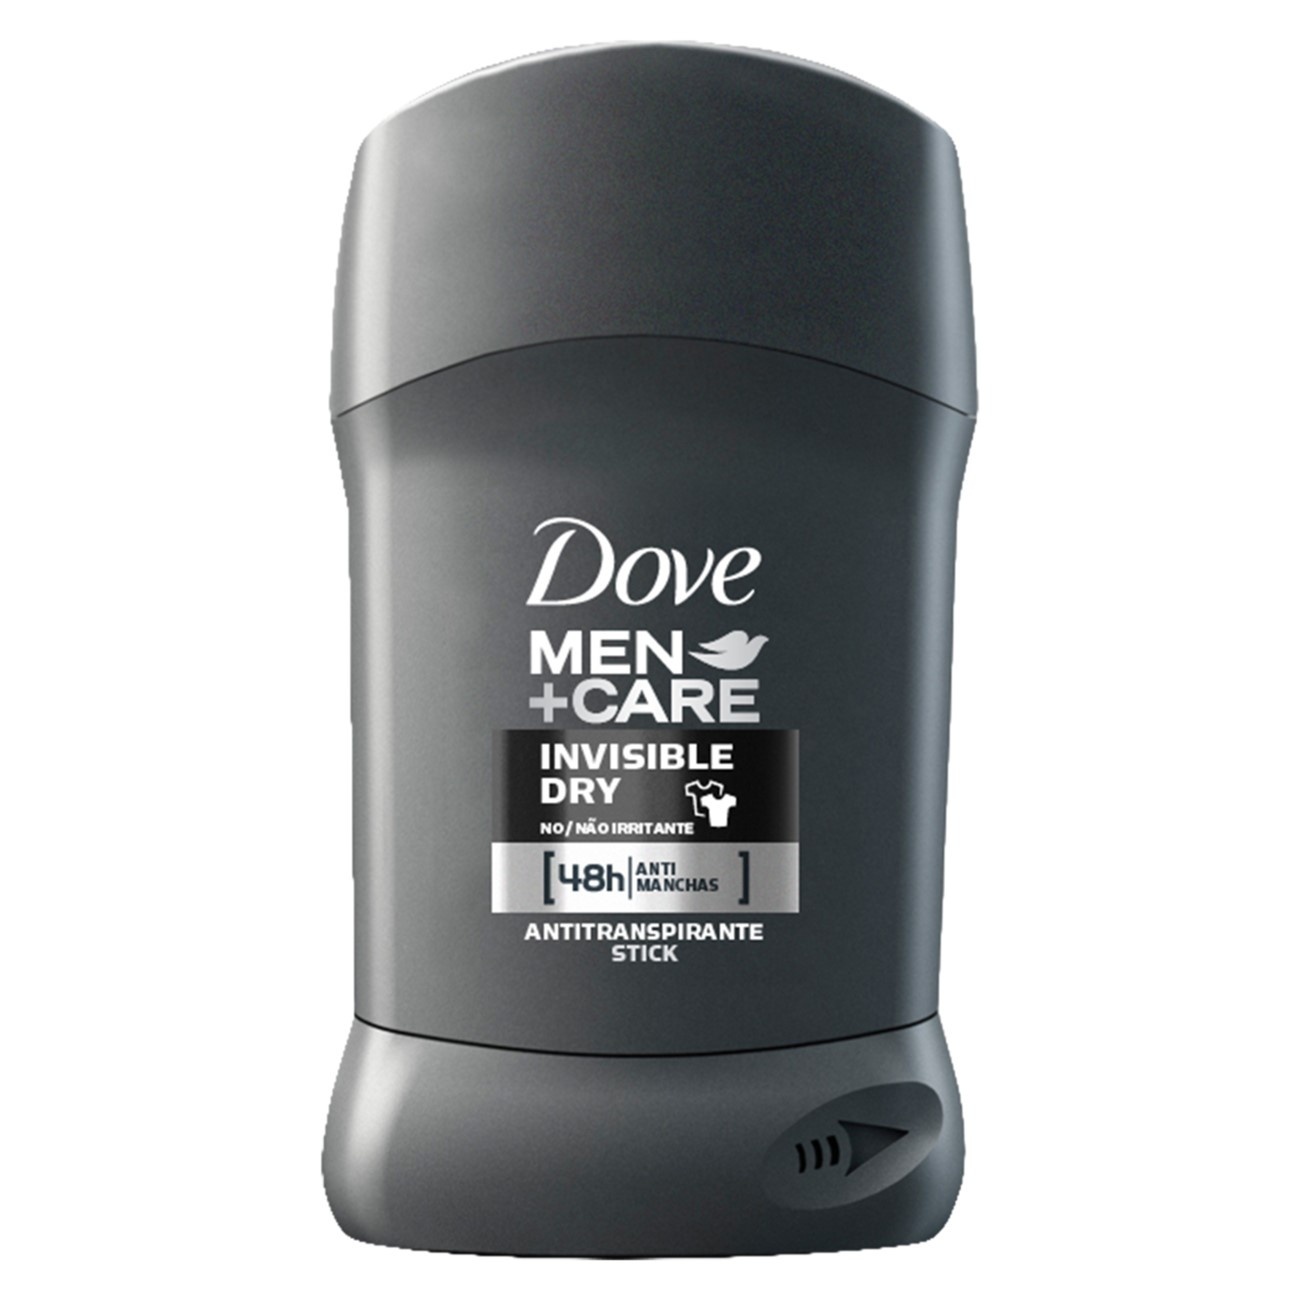 Antitranspirante Stick Dove Invisible Dry Men+Care 50g